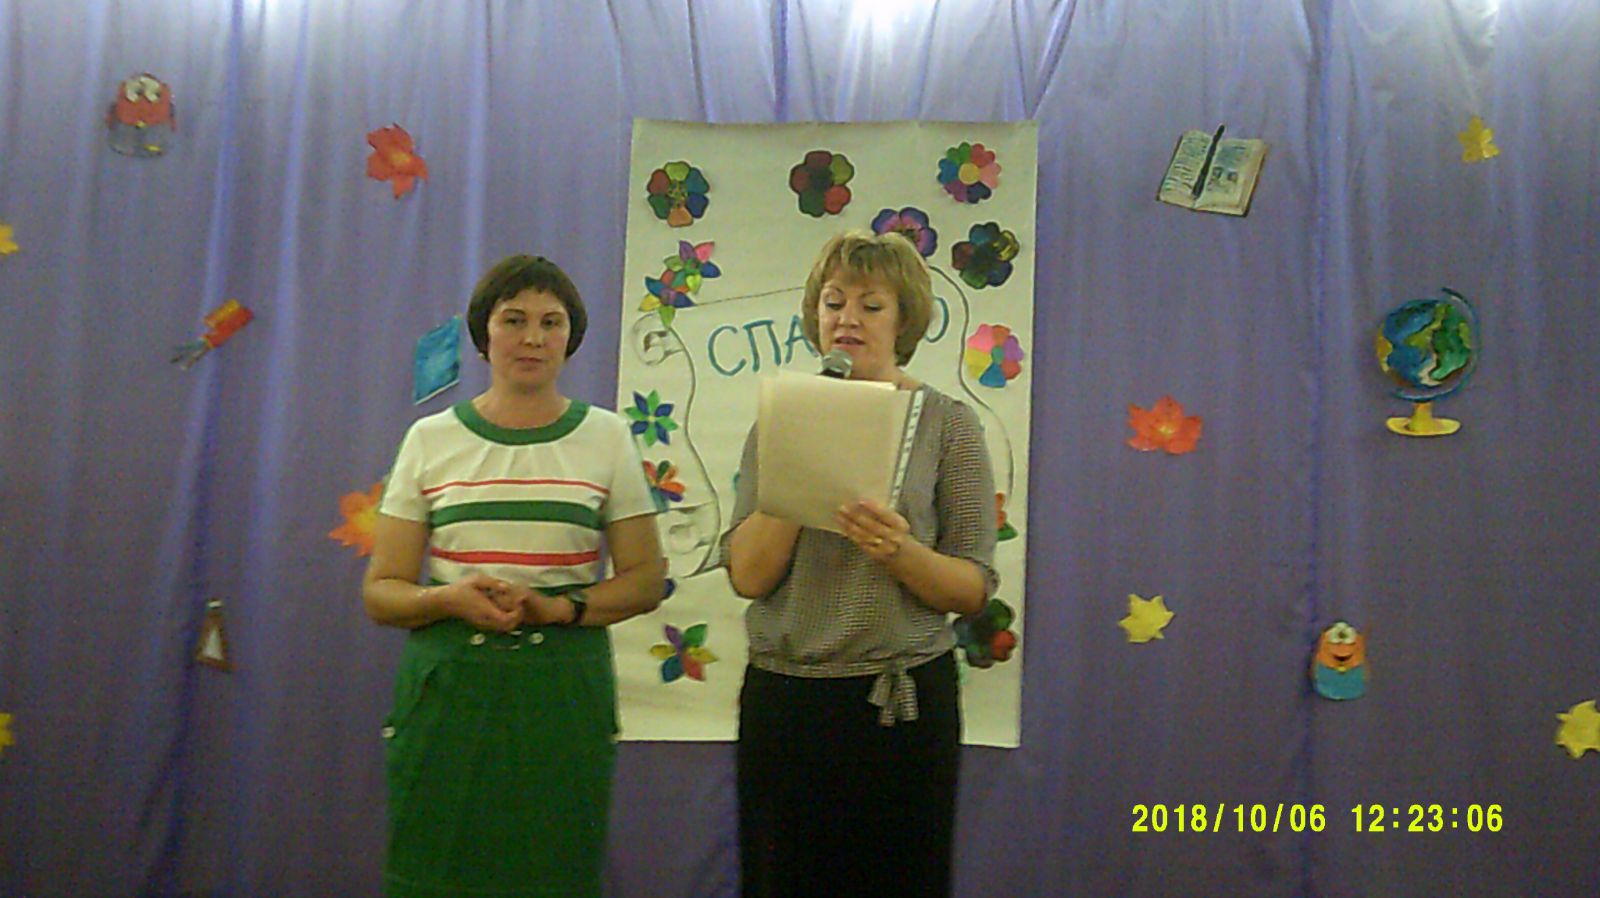 Поздравления от директора школы Орловой С. В. и председателя профсоюза школы Ермаковой Н. В. в честь Дня учителя